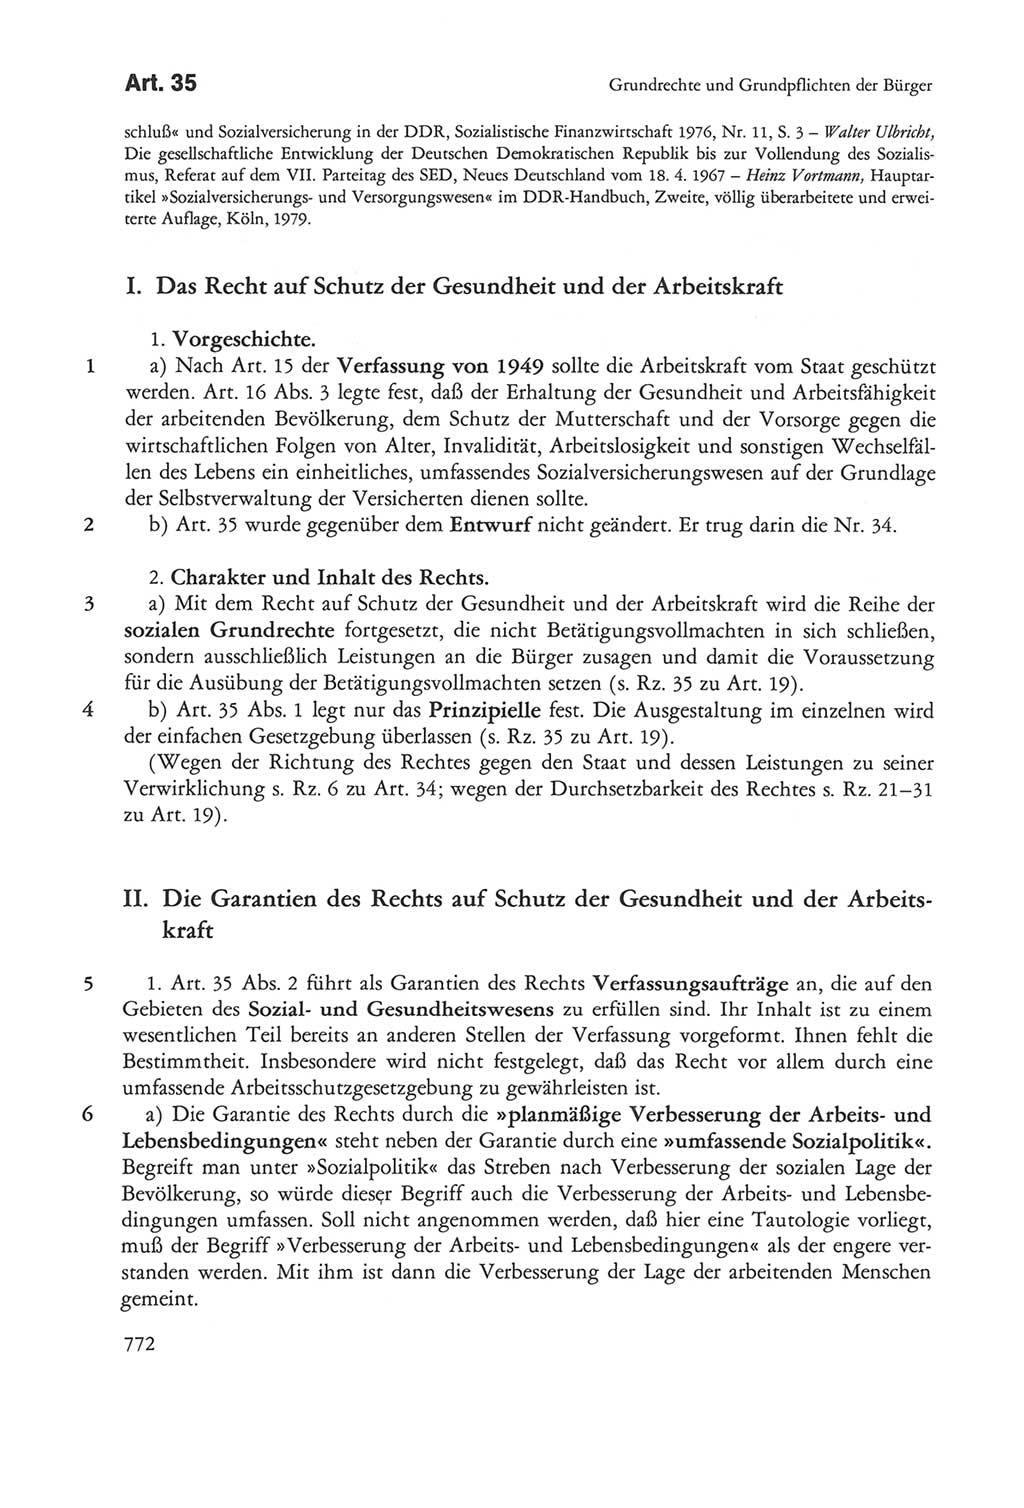 Die sozialistische Verfassung der Deutschen Demokratischen Republik (DDR), Kommentar mit einem Nachtrag 1997, Seite 772 (Soz. Verf. DDR Komm. Nachtr. 1997, S. 772)